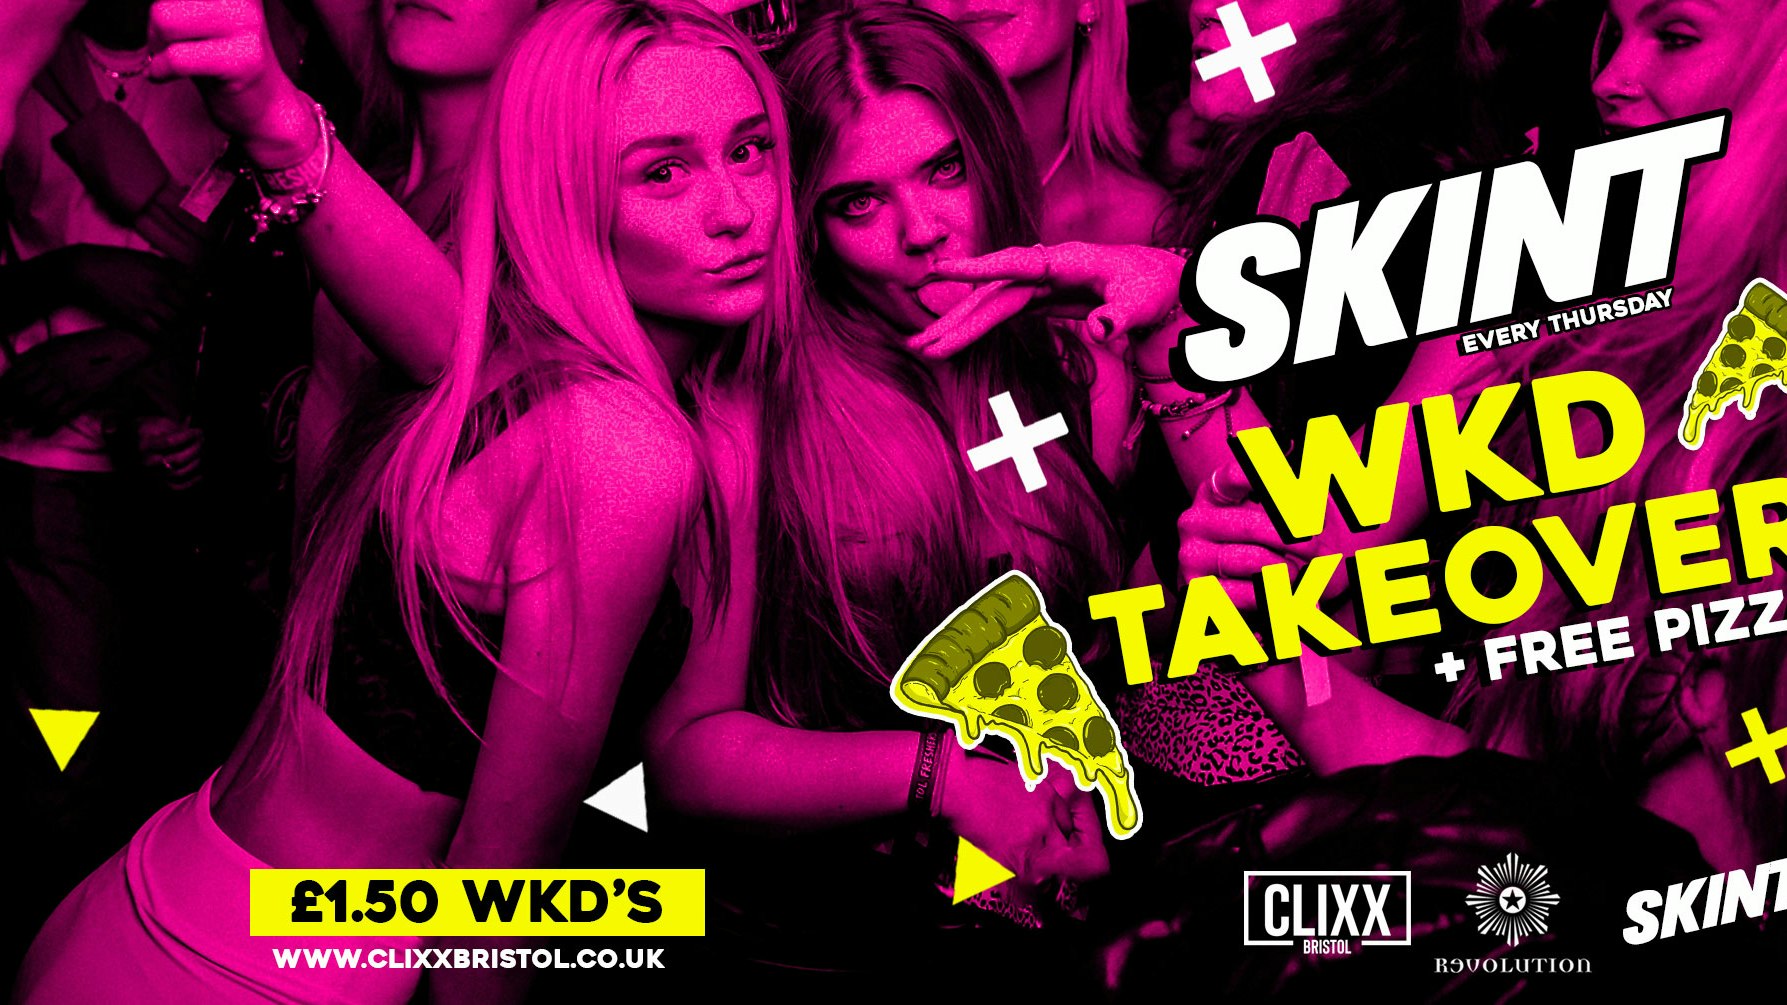 SKINT | WKD TAKEOVER! –  £1.50 WKD’S ALL NIGHT + FREE PIZZA